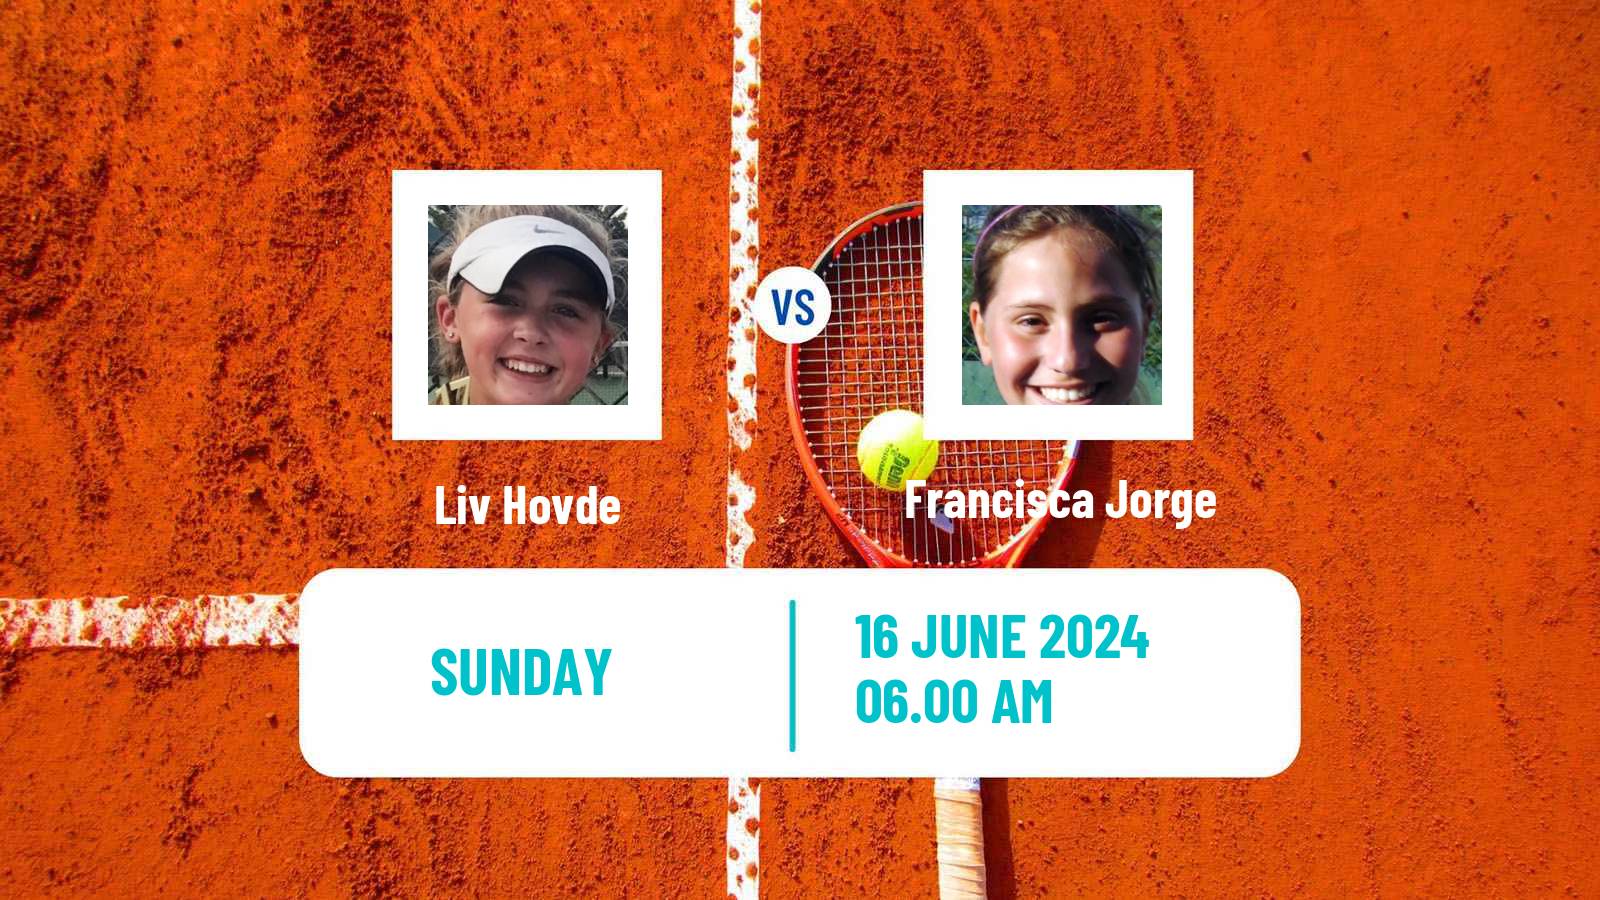 Tennis ITF W75 Guimaraes Women Liv Hovde - Francisca Jorge